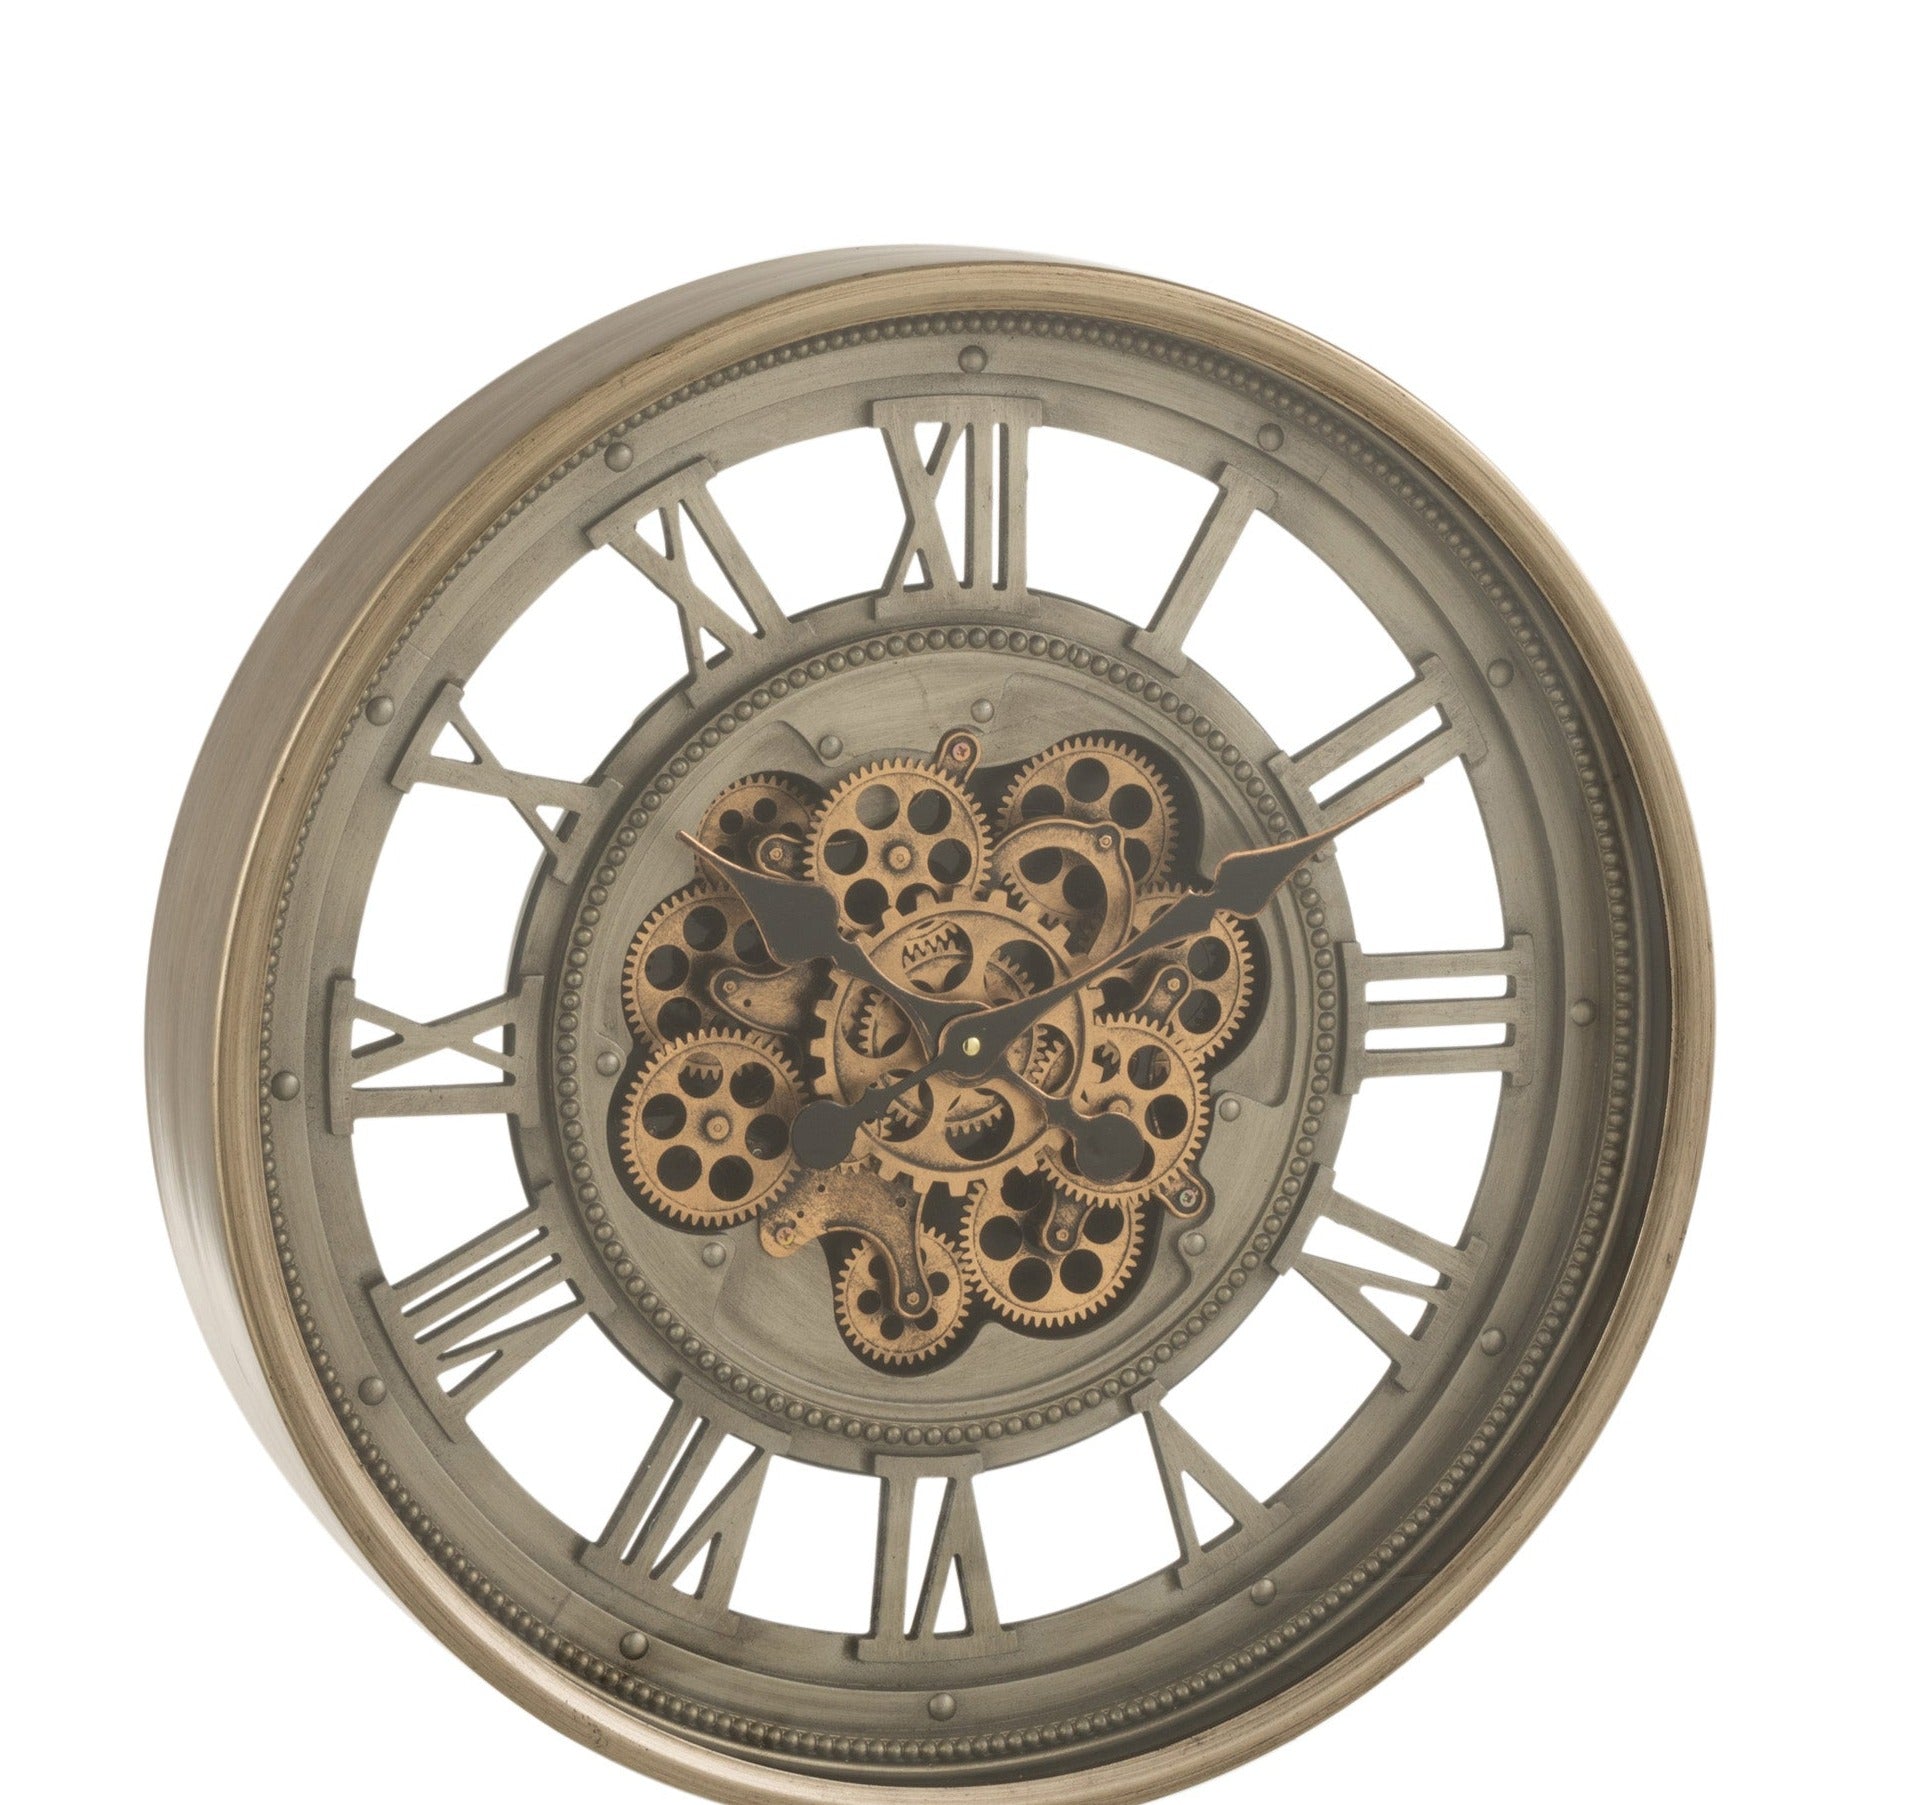 Große runde Wanduhr in grau-gold; runder Metallrahmen mit einer Niete jeweils über den Römischen Ziffern, die hinten offen sind  das Uhrwerk der Mitte ist sichtbar auf einer Metallscheibe zu sehen; auch die Zeiger sind im römischen Stil.